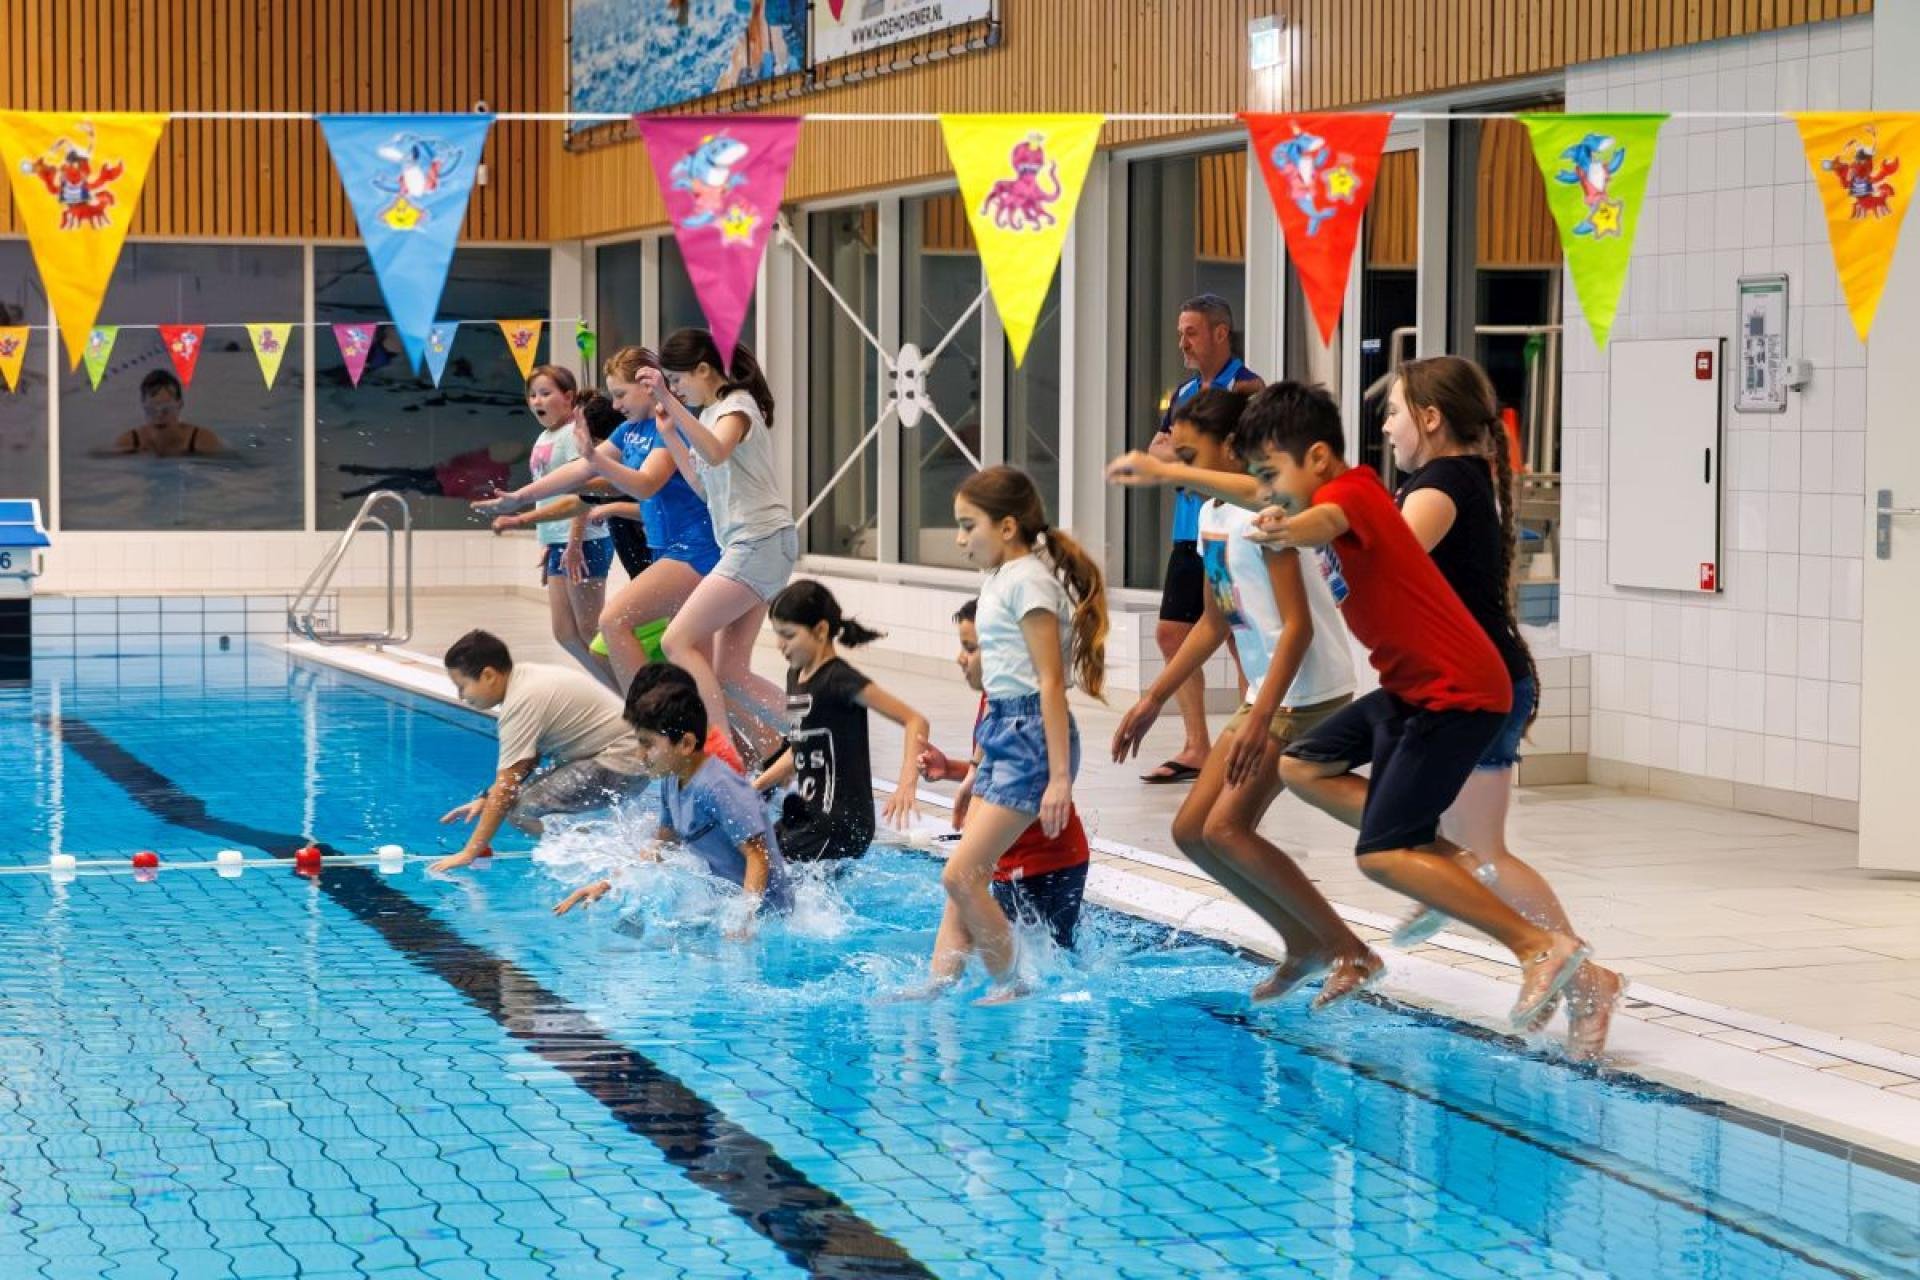 Kinderen in kleding spring in het water van een zwembad. Ook hangen er vlaggetjes in het zwembad, een slinger